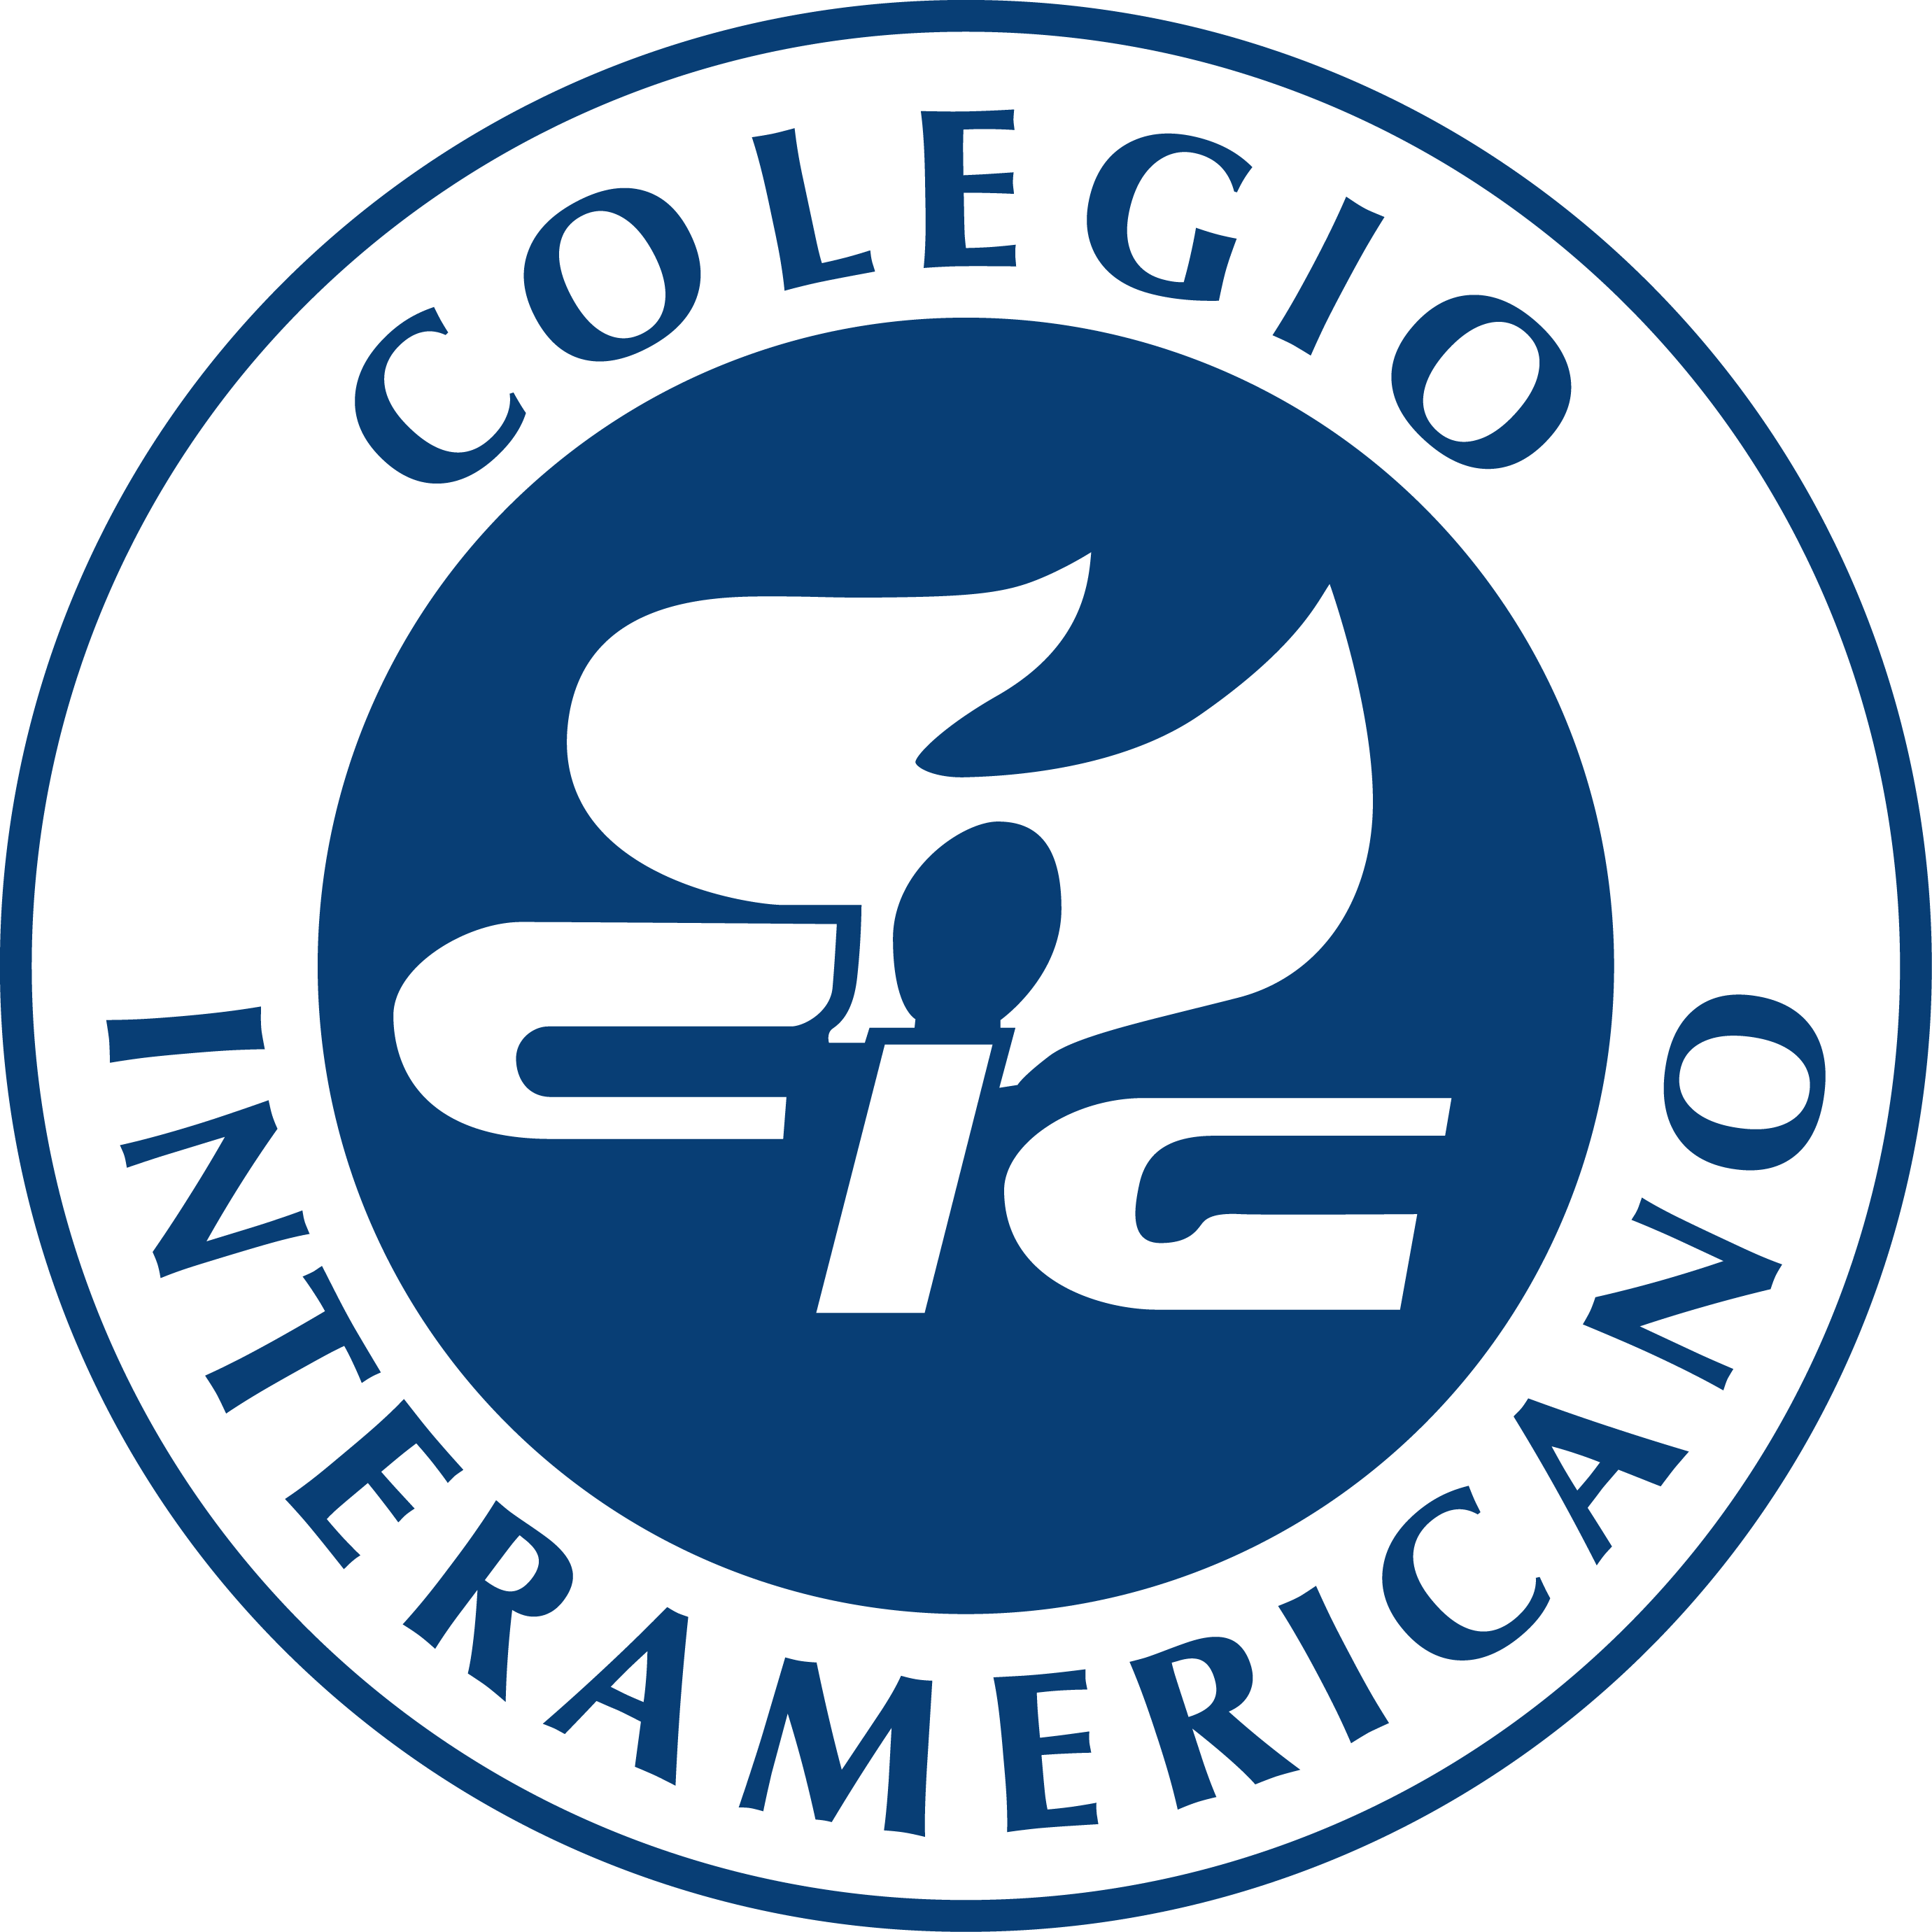 Colegio Interamericano